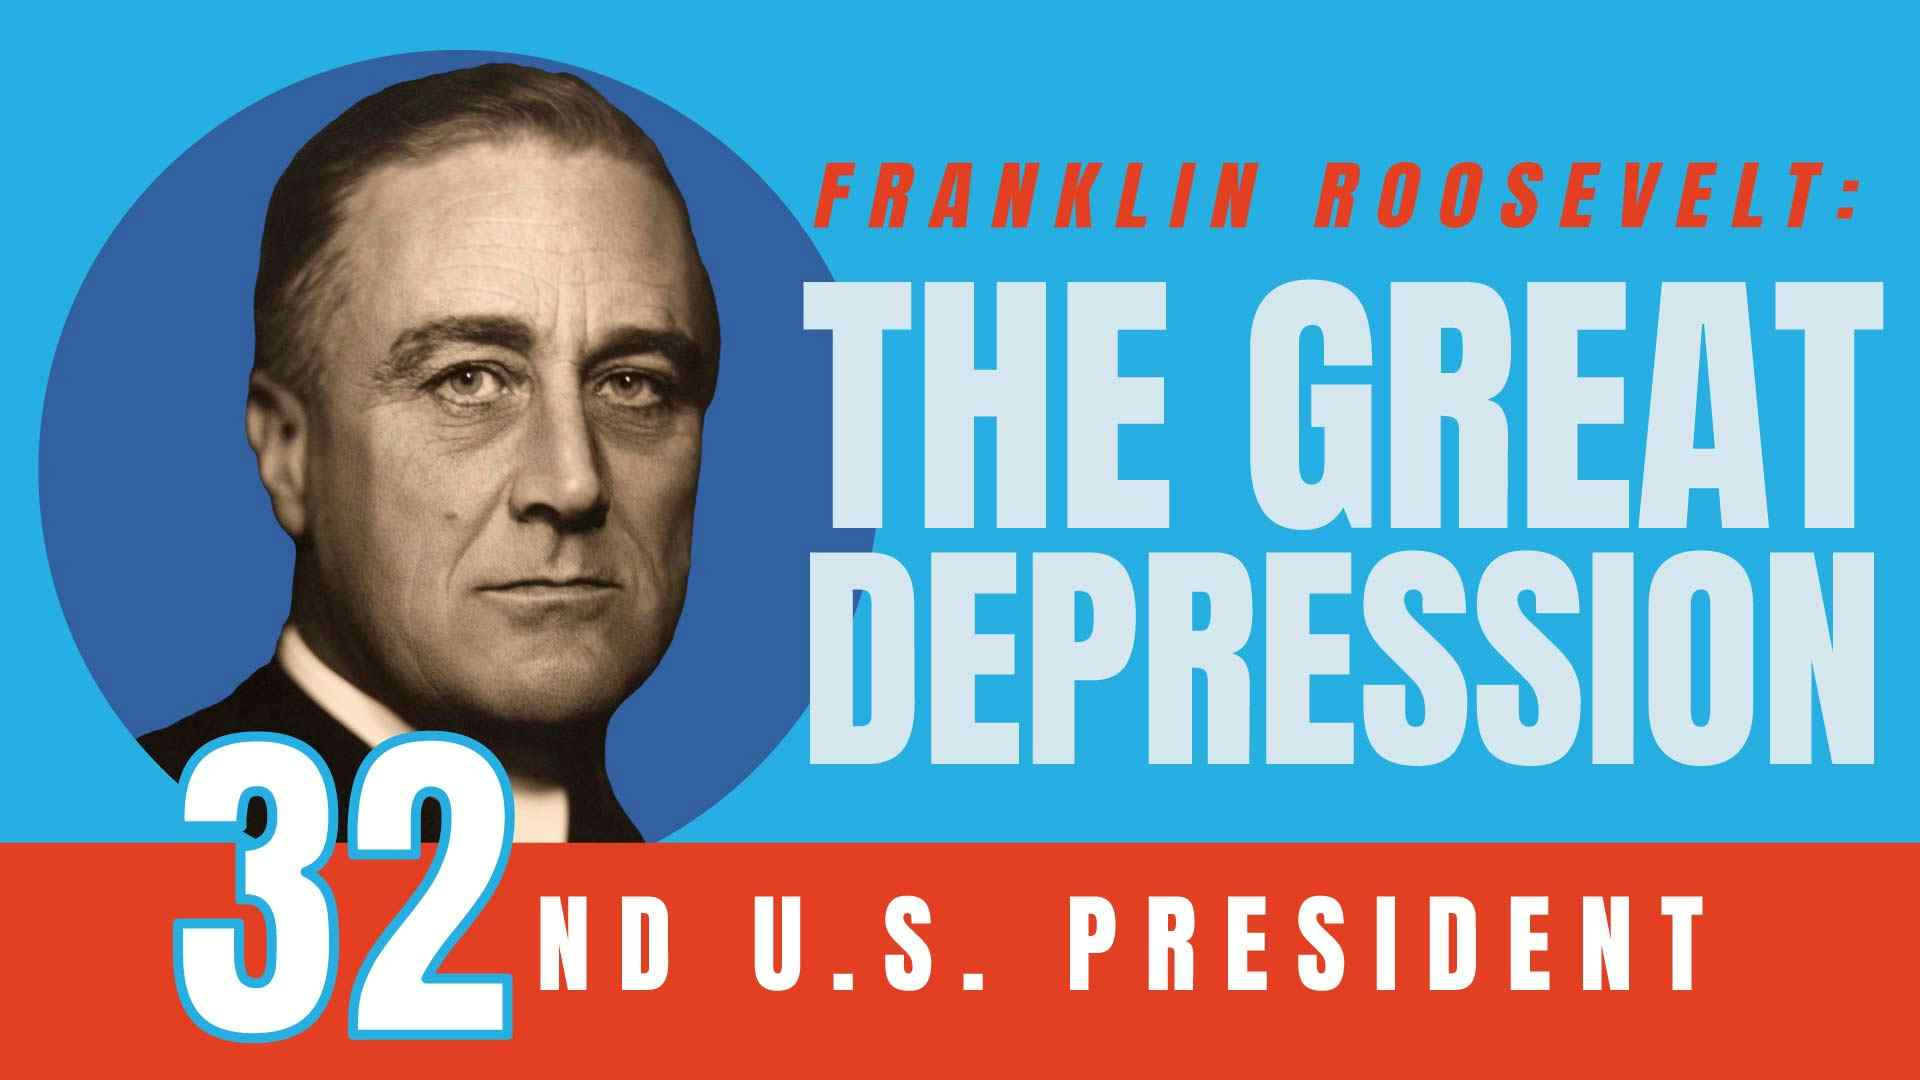 Franklin Roosevelt: The Great Depression